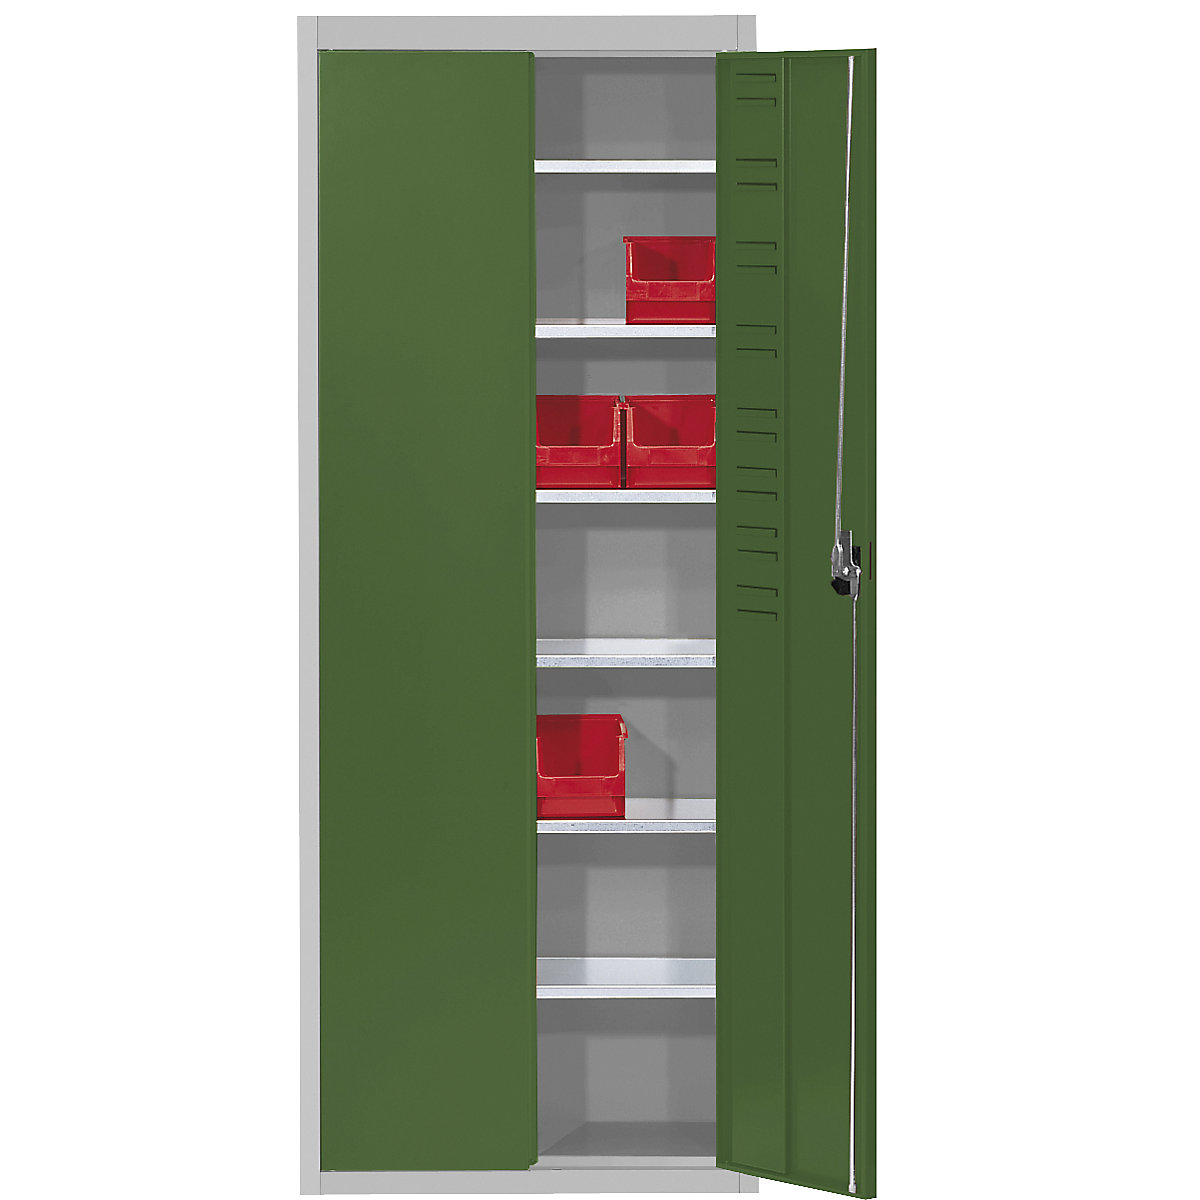 Magazijnkast, zonder magazijnbakken – mauser, h x b x d = 1740 x 680 x 280 mm, tweekleurig, kastframe grijs, deuren groen, vanaf 3 stuks-6